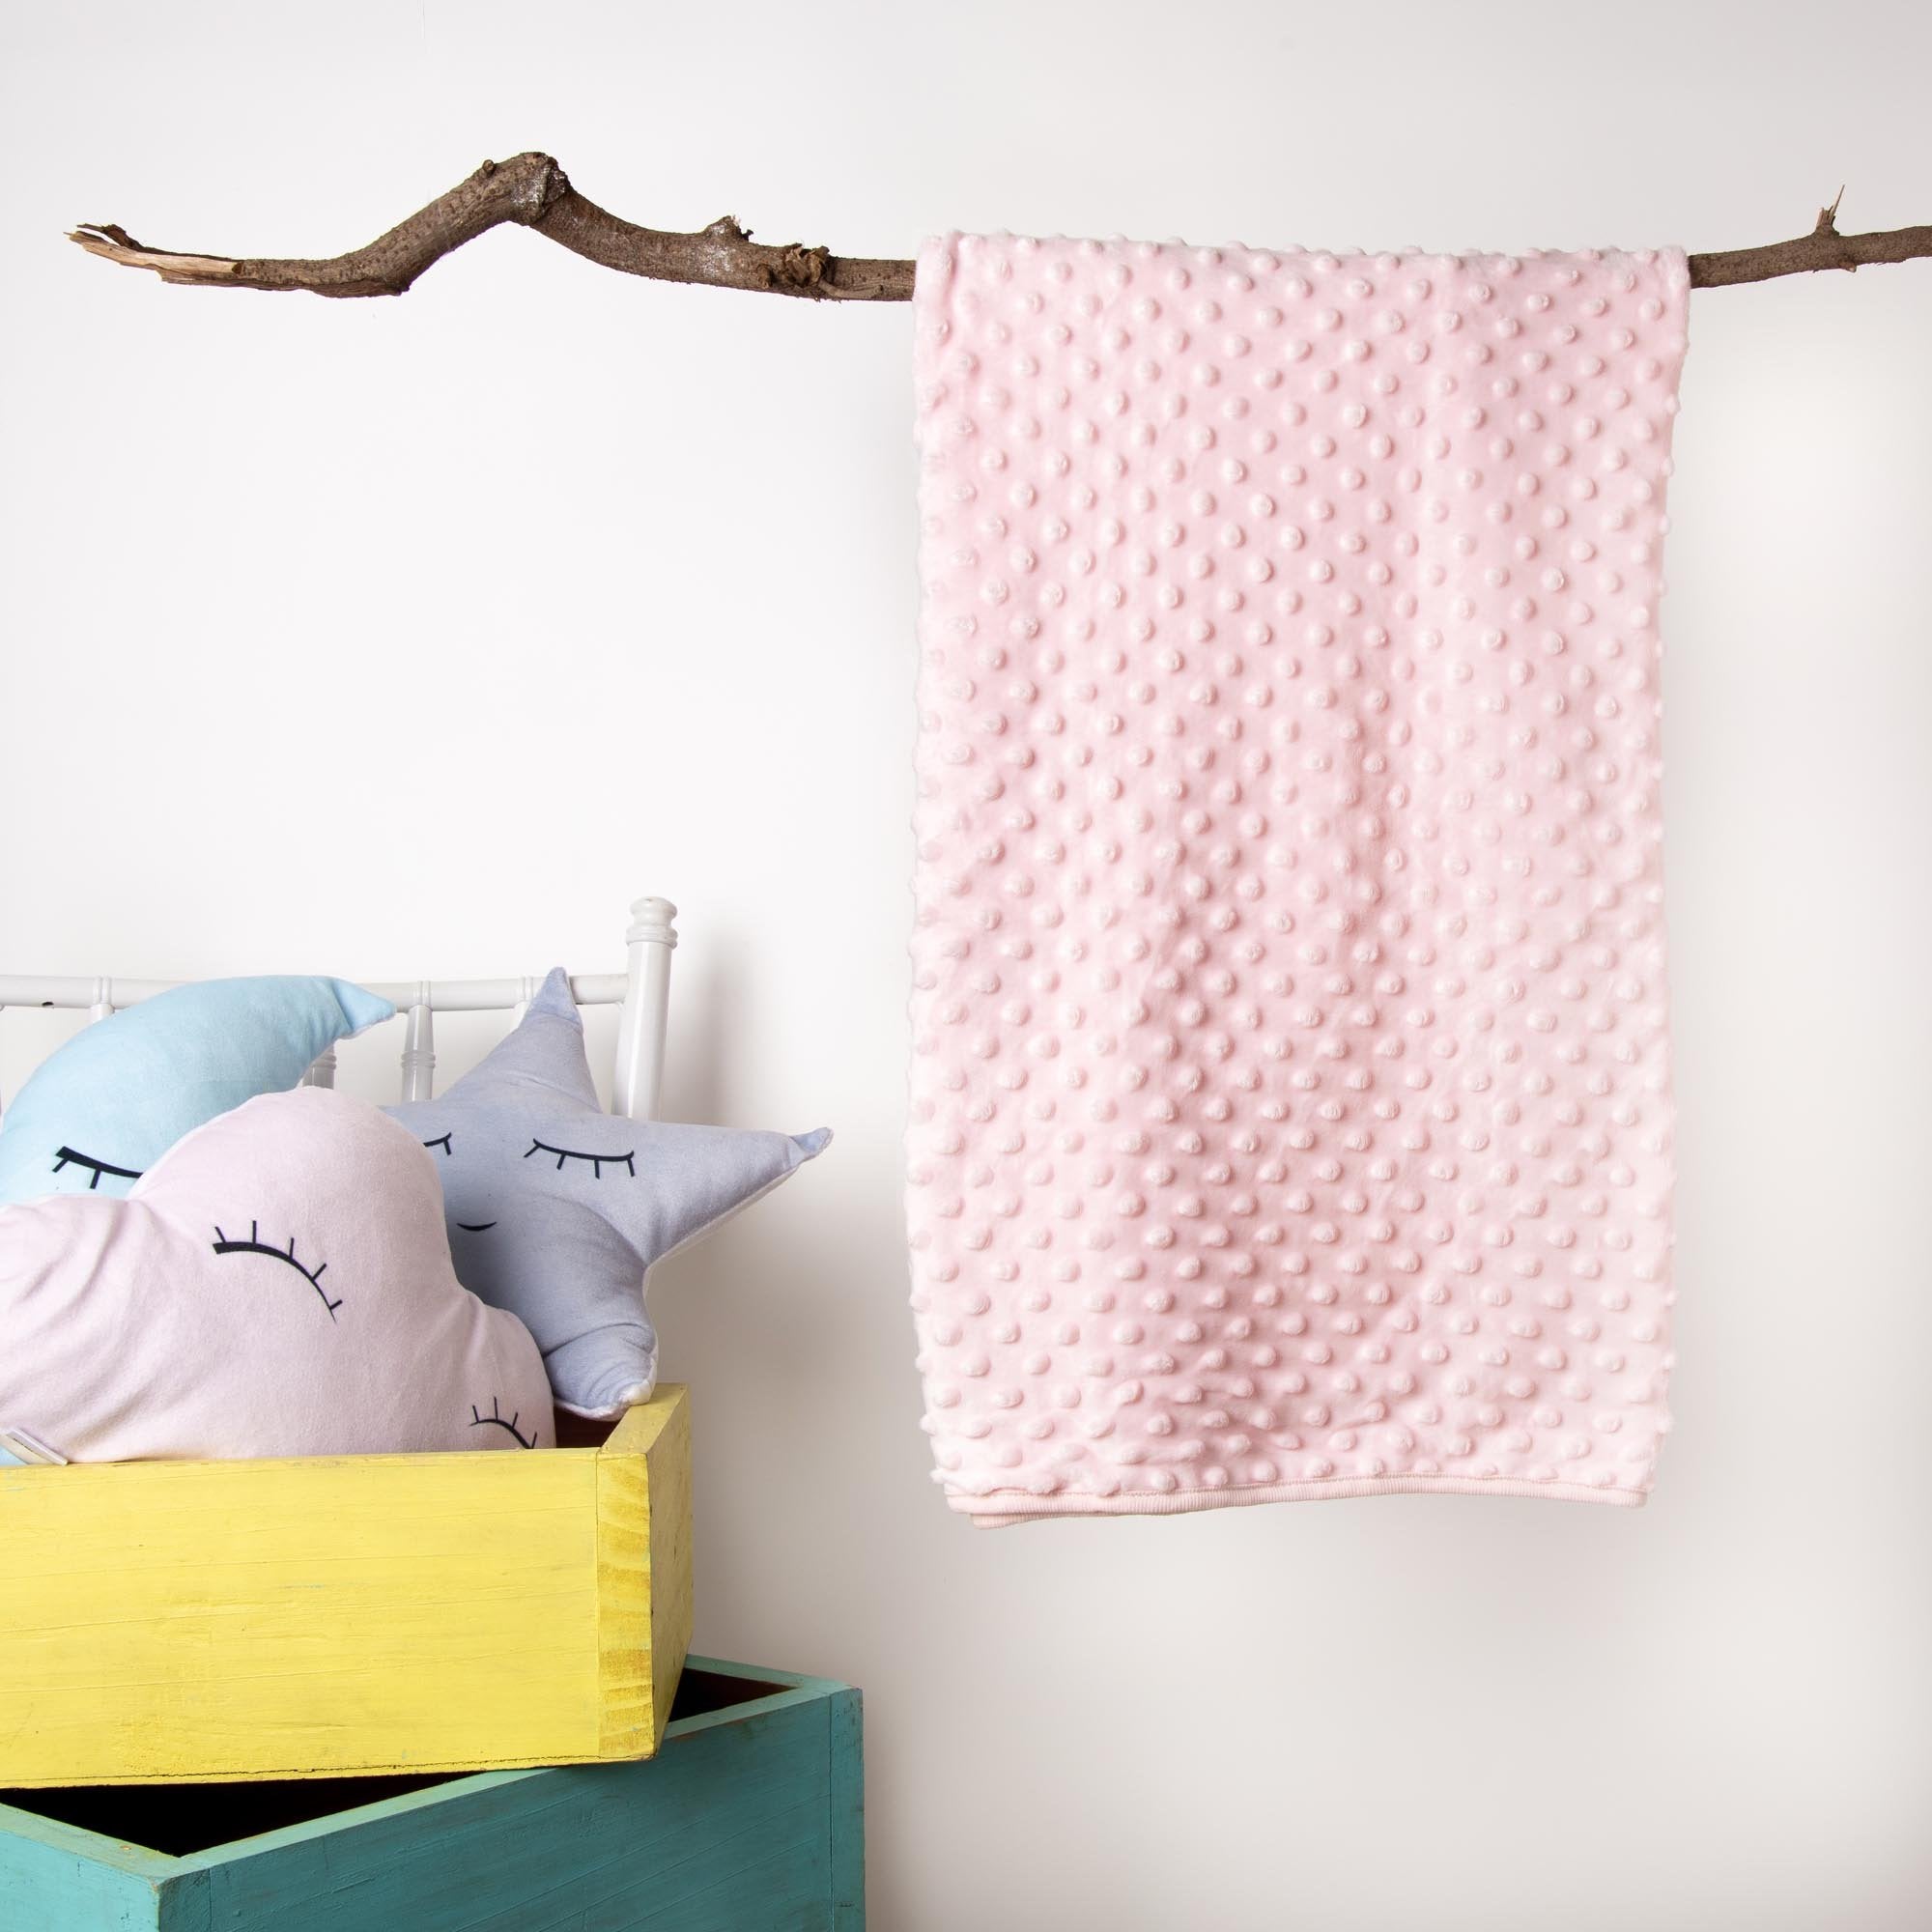 Baby Pink Velvet Blankets